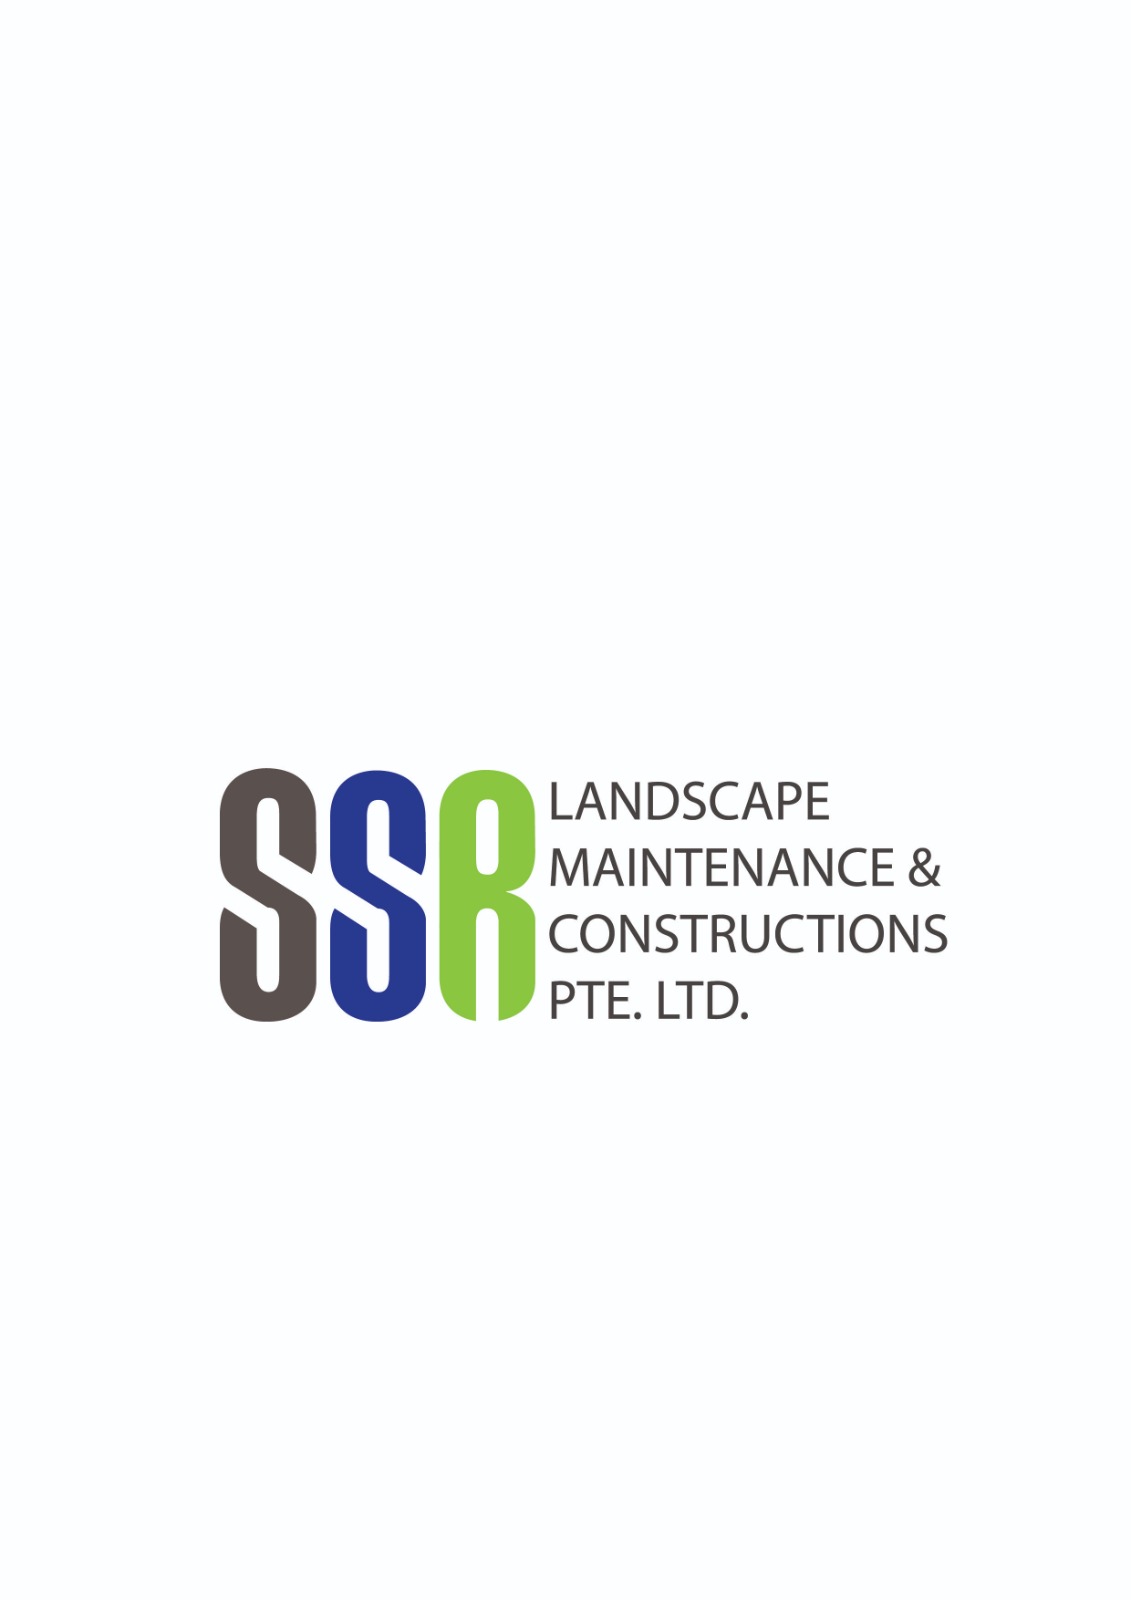 Ssr Landscape Maintenance & Construction Pte. Ltd. logo